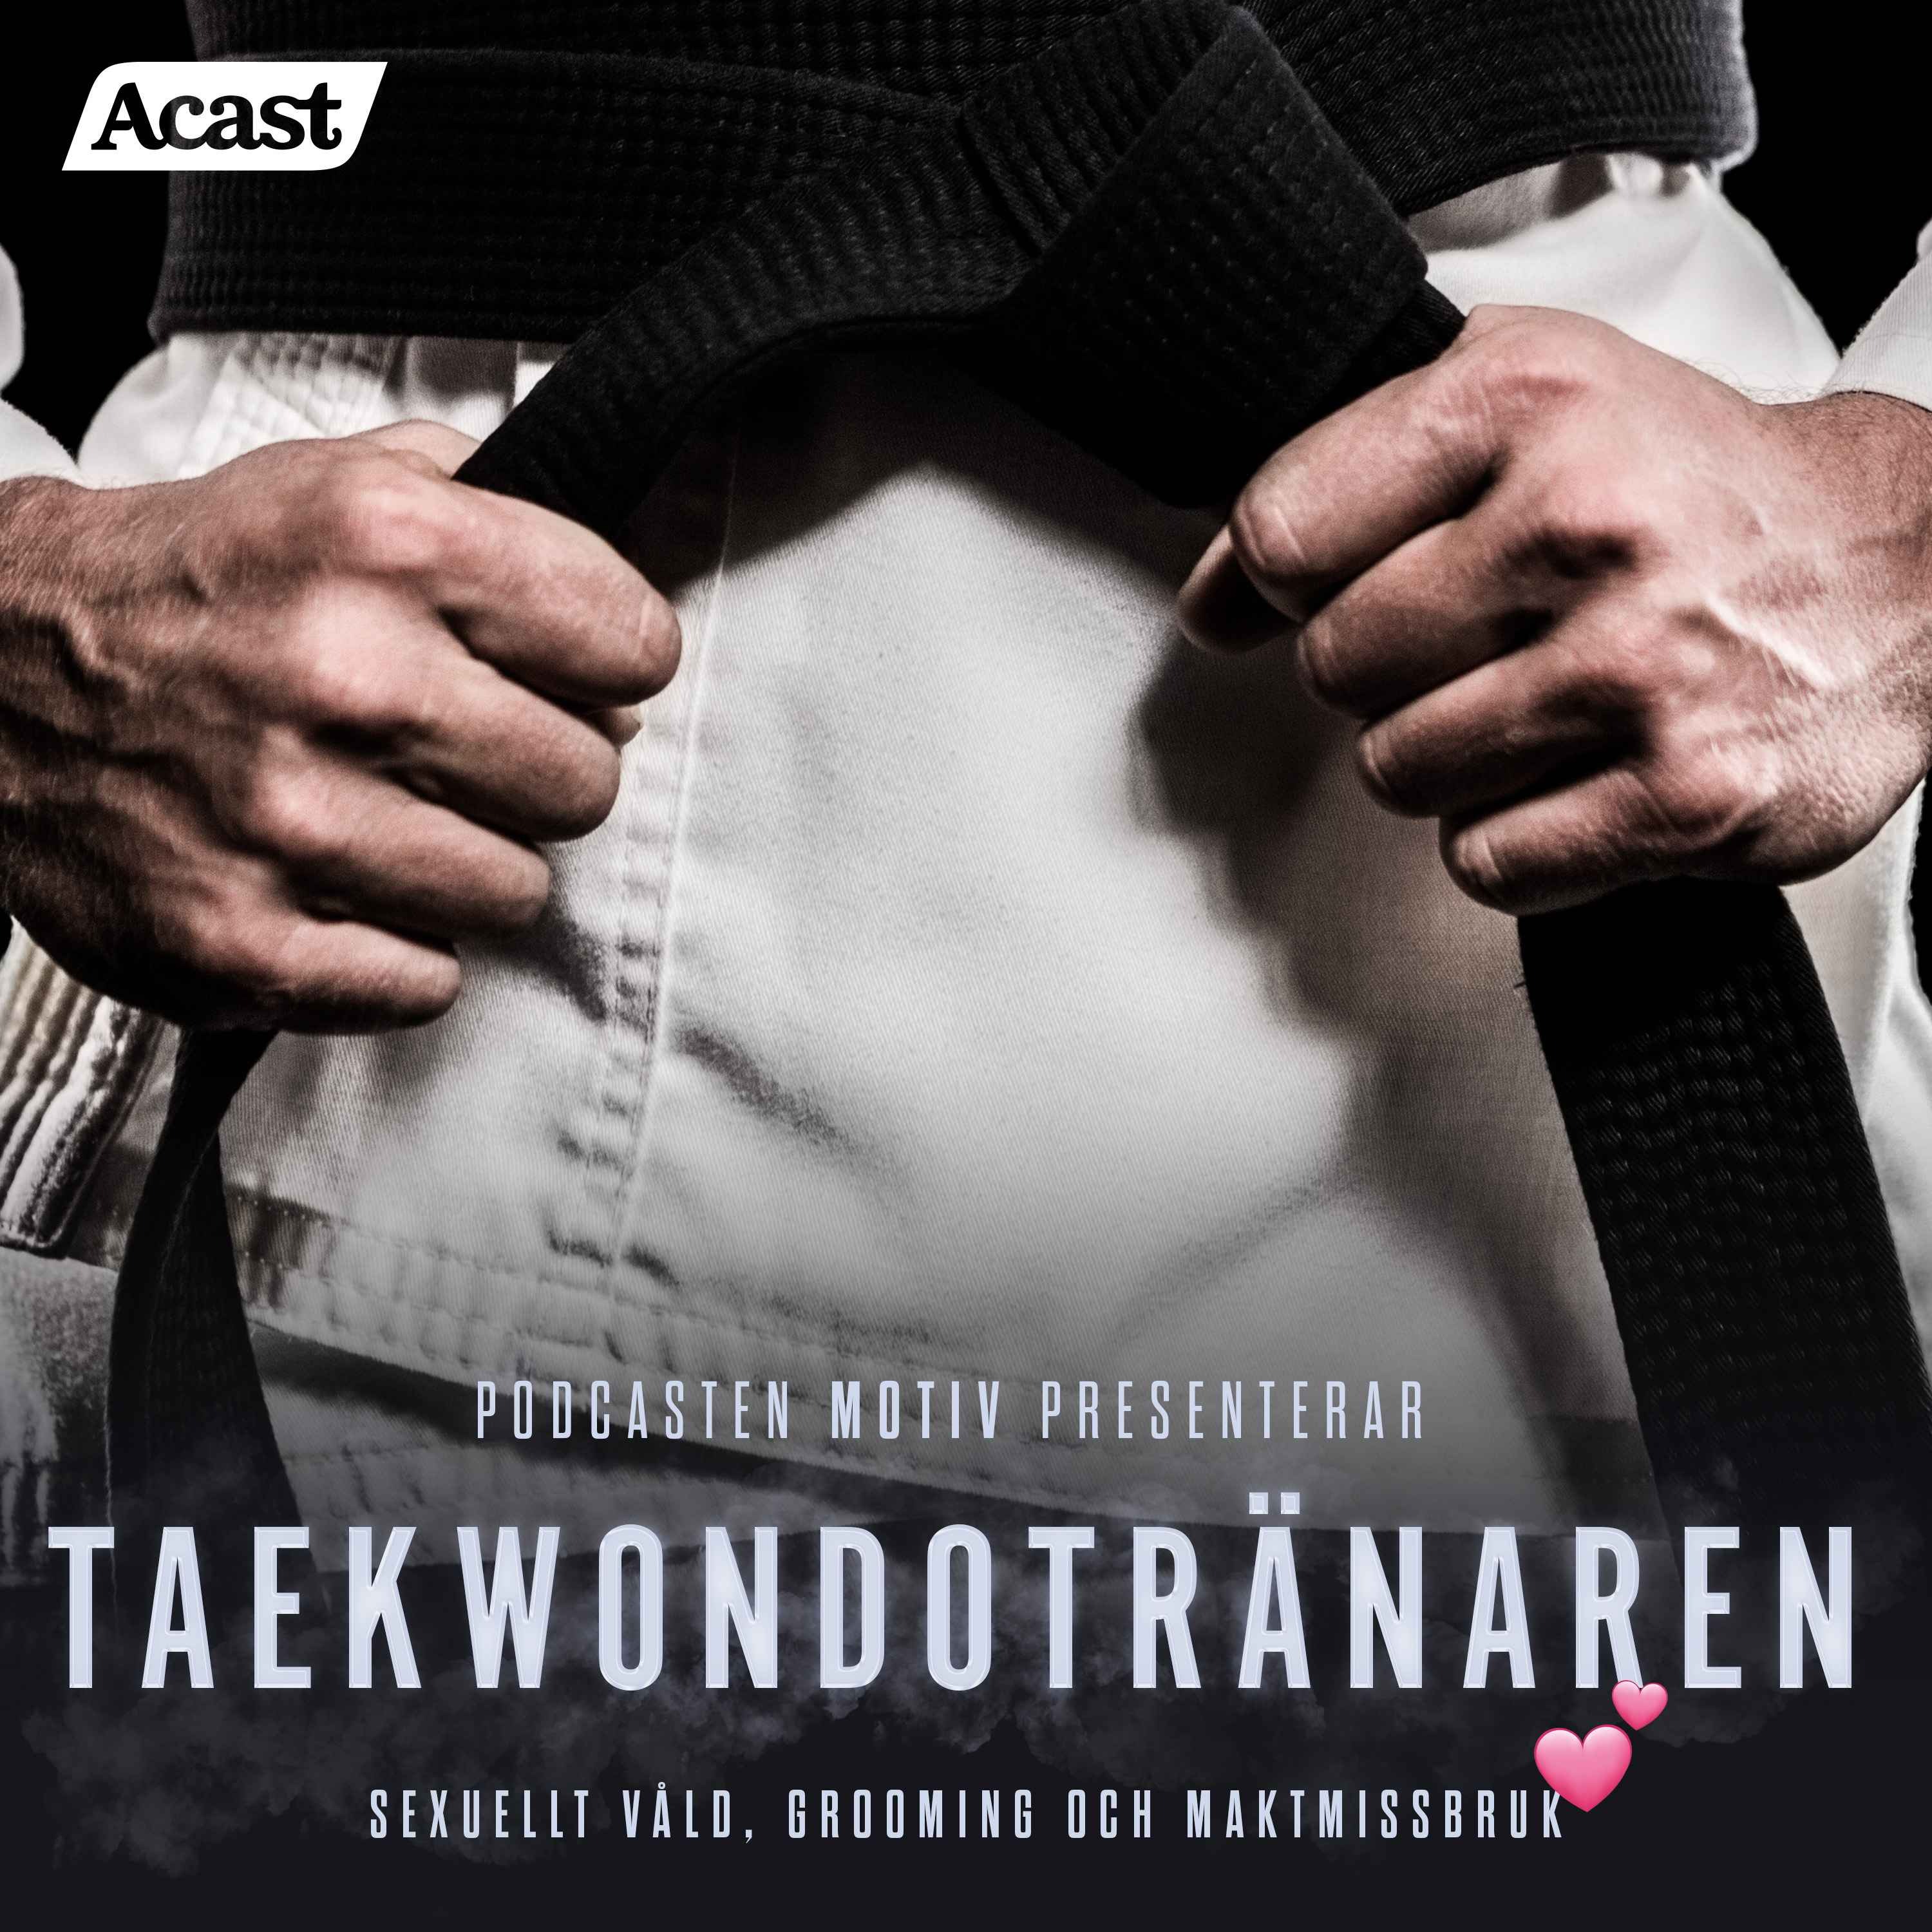 Motiv: "Taekwondotränaren" - Teaser